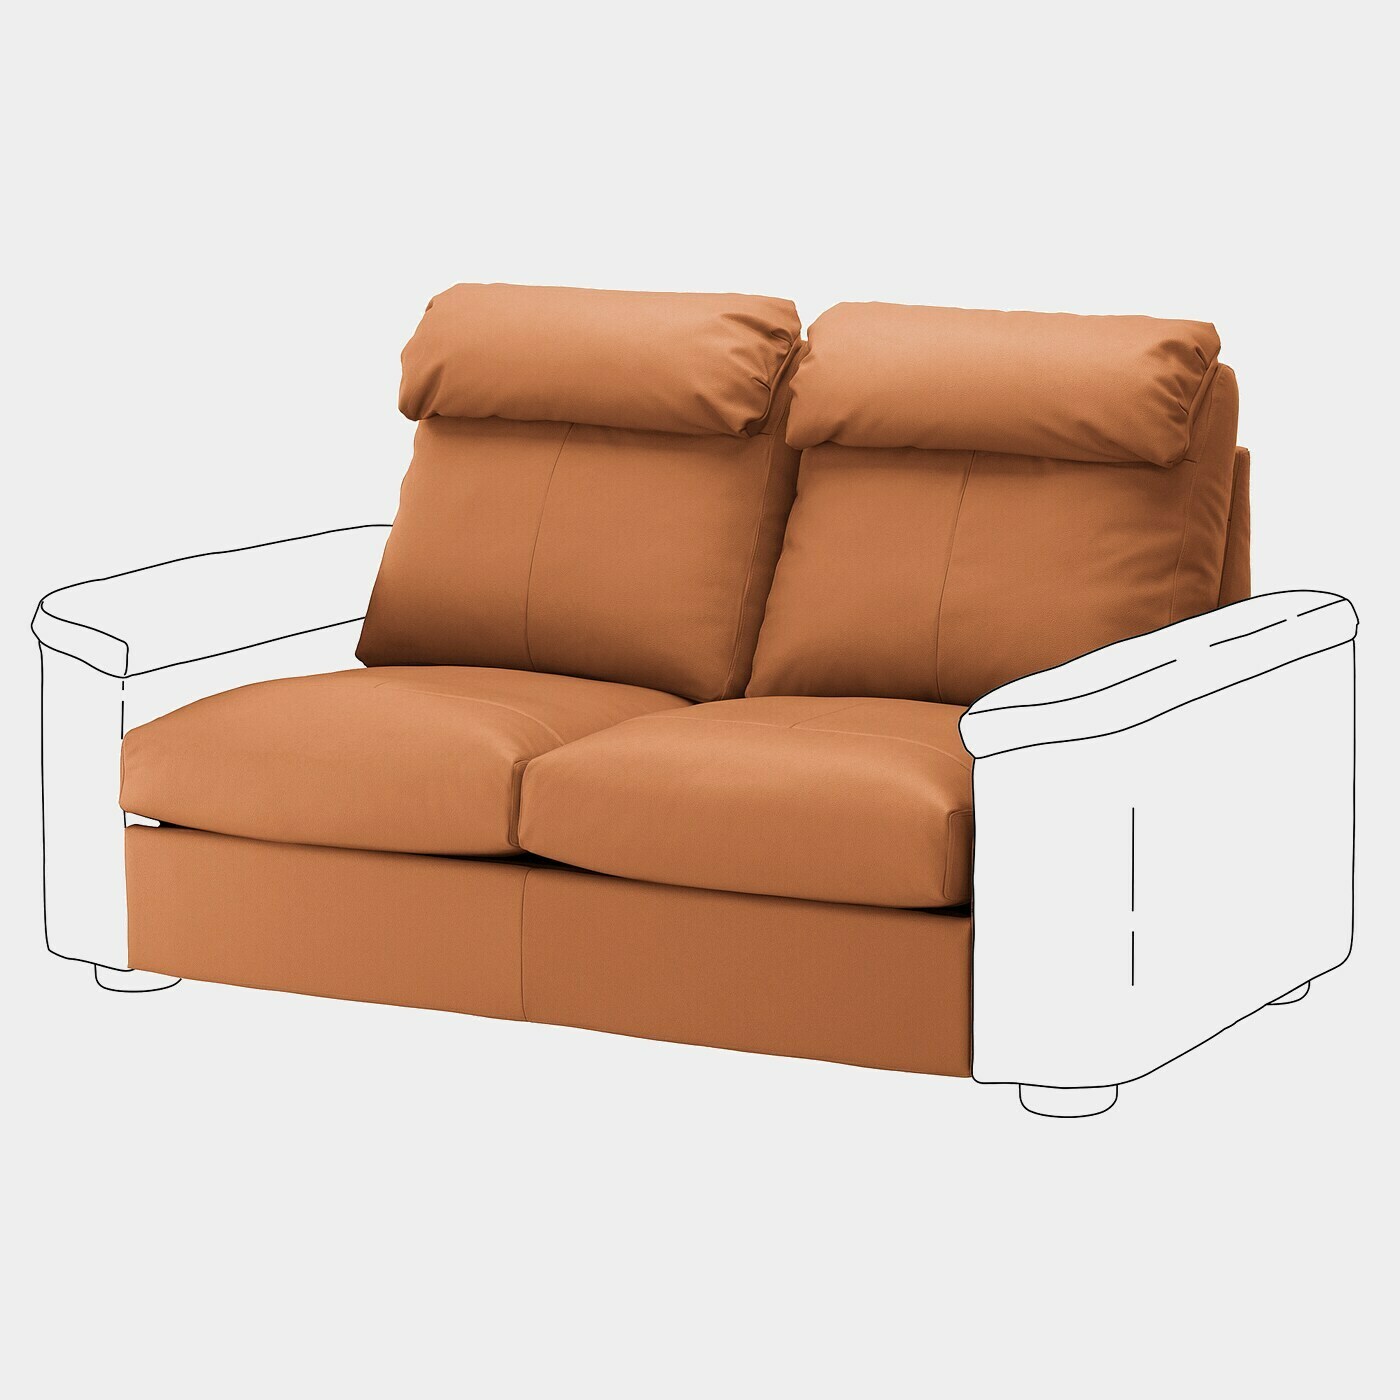 LIDHULT 2er-Bettsofaelement  - Bettsofas - Möbel Ideen für dein Zuhause von Home Trends. Möbel Trends von Social Media Influencer für dein Skandi Zuhause.